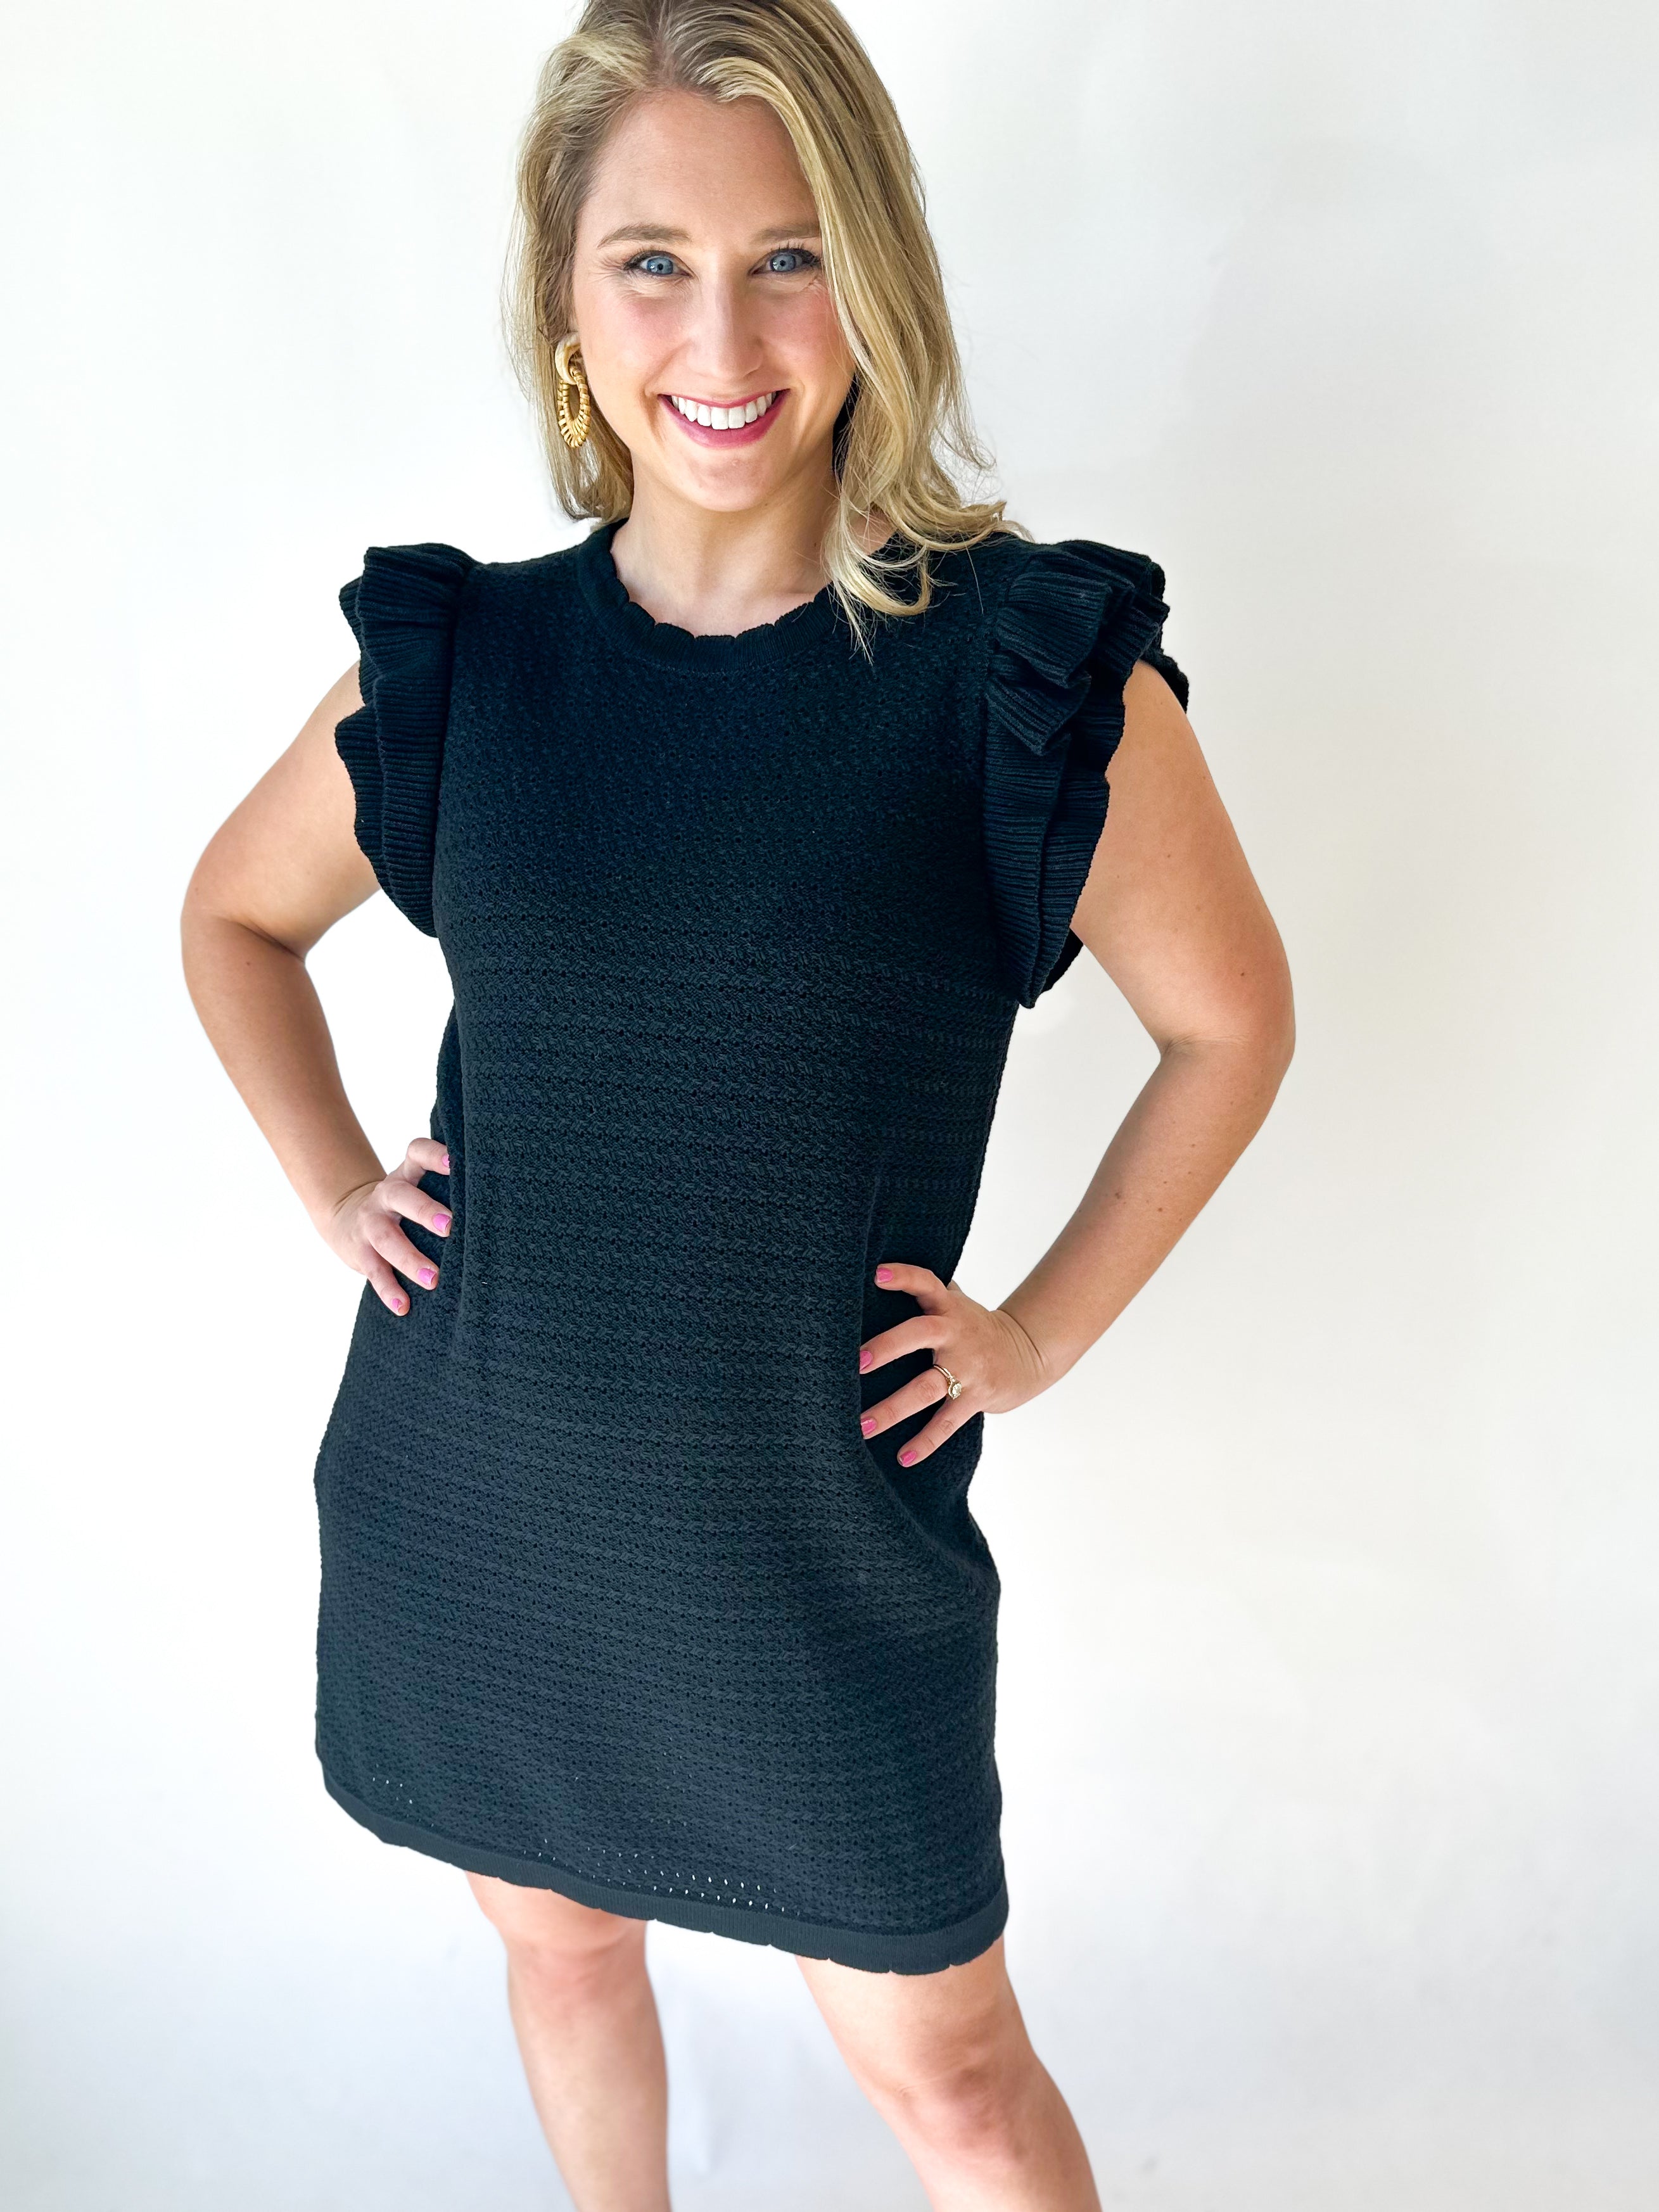 Black Crochet Knit Mini Dress-510 Mini-ENTRO-July & June Women's Fashion Boutique Located in San Antonio, Texas